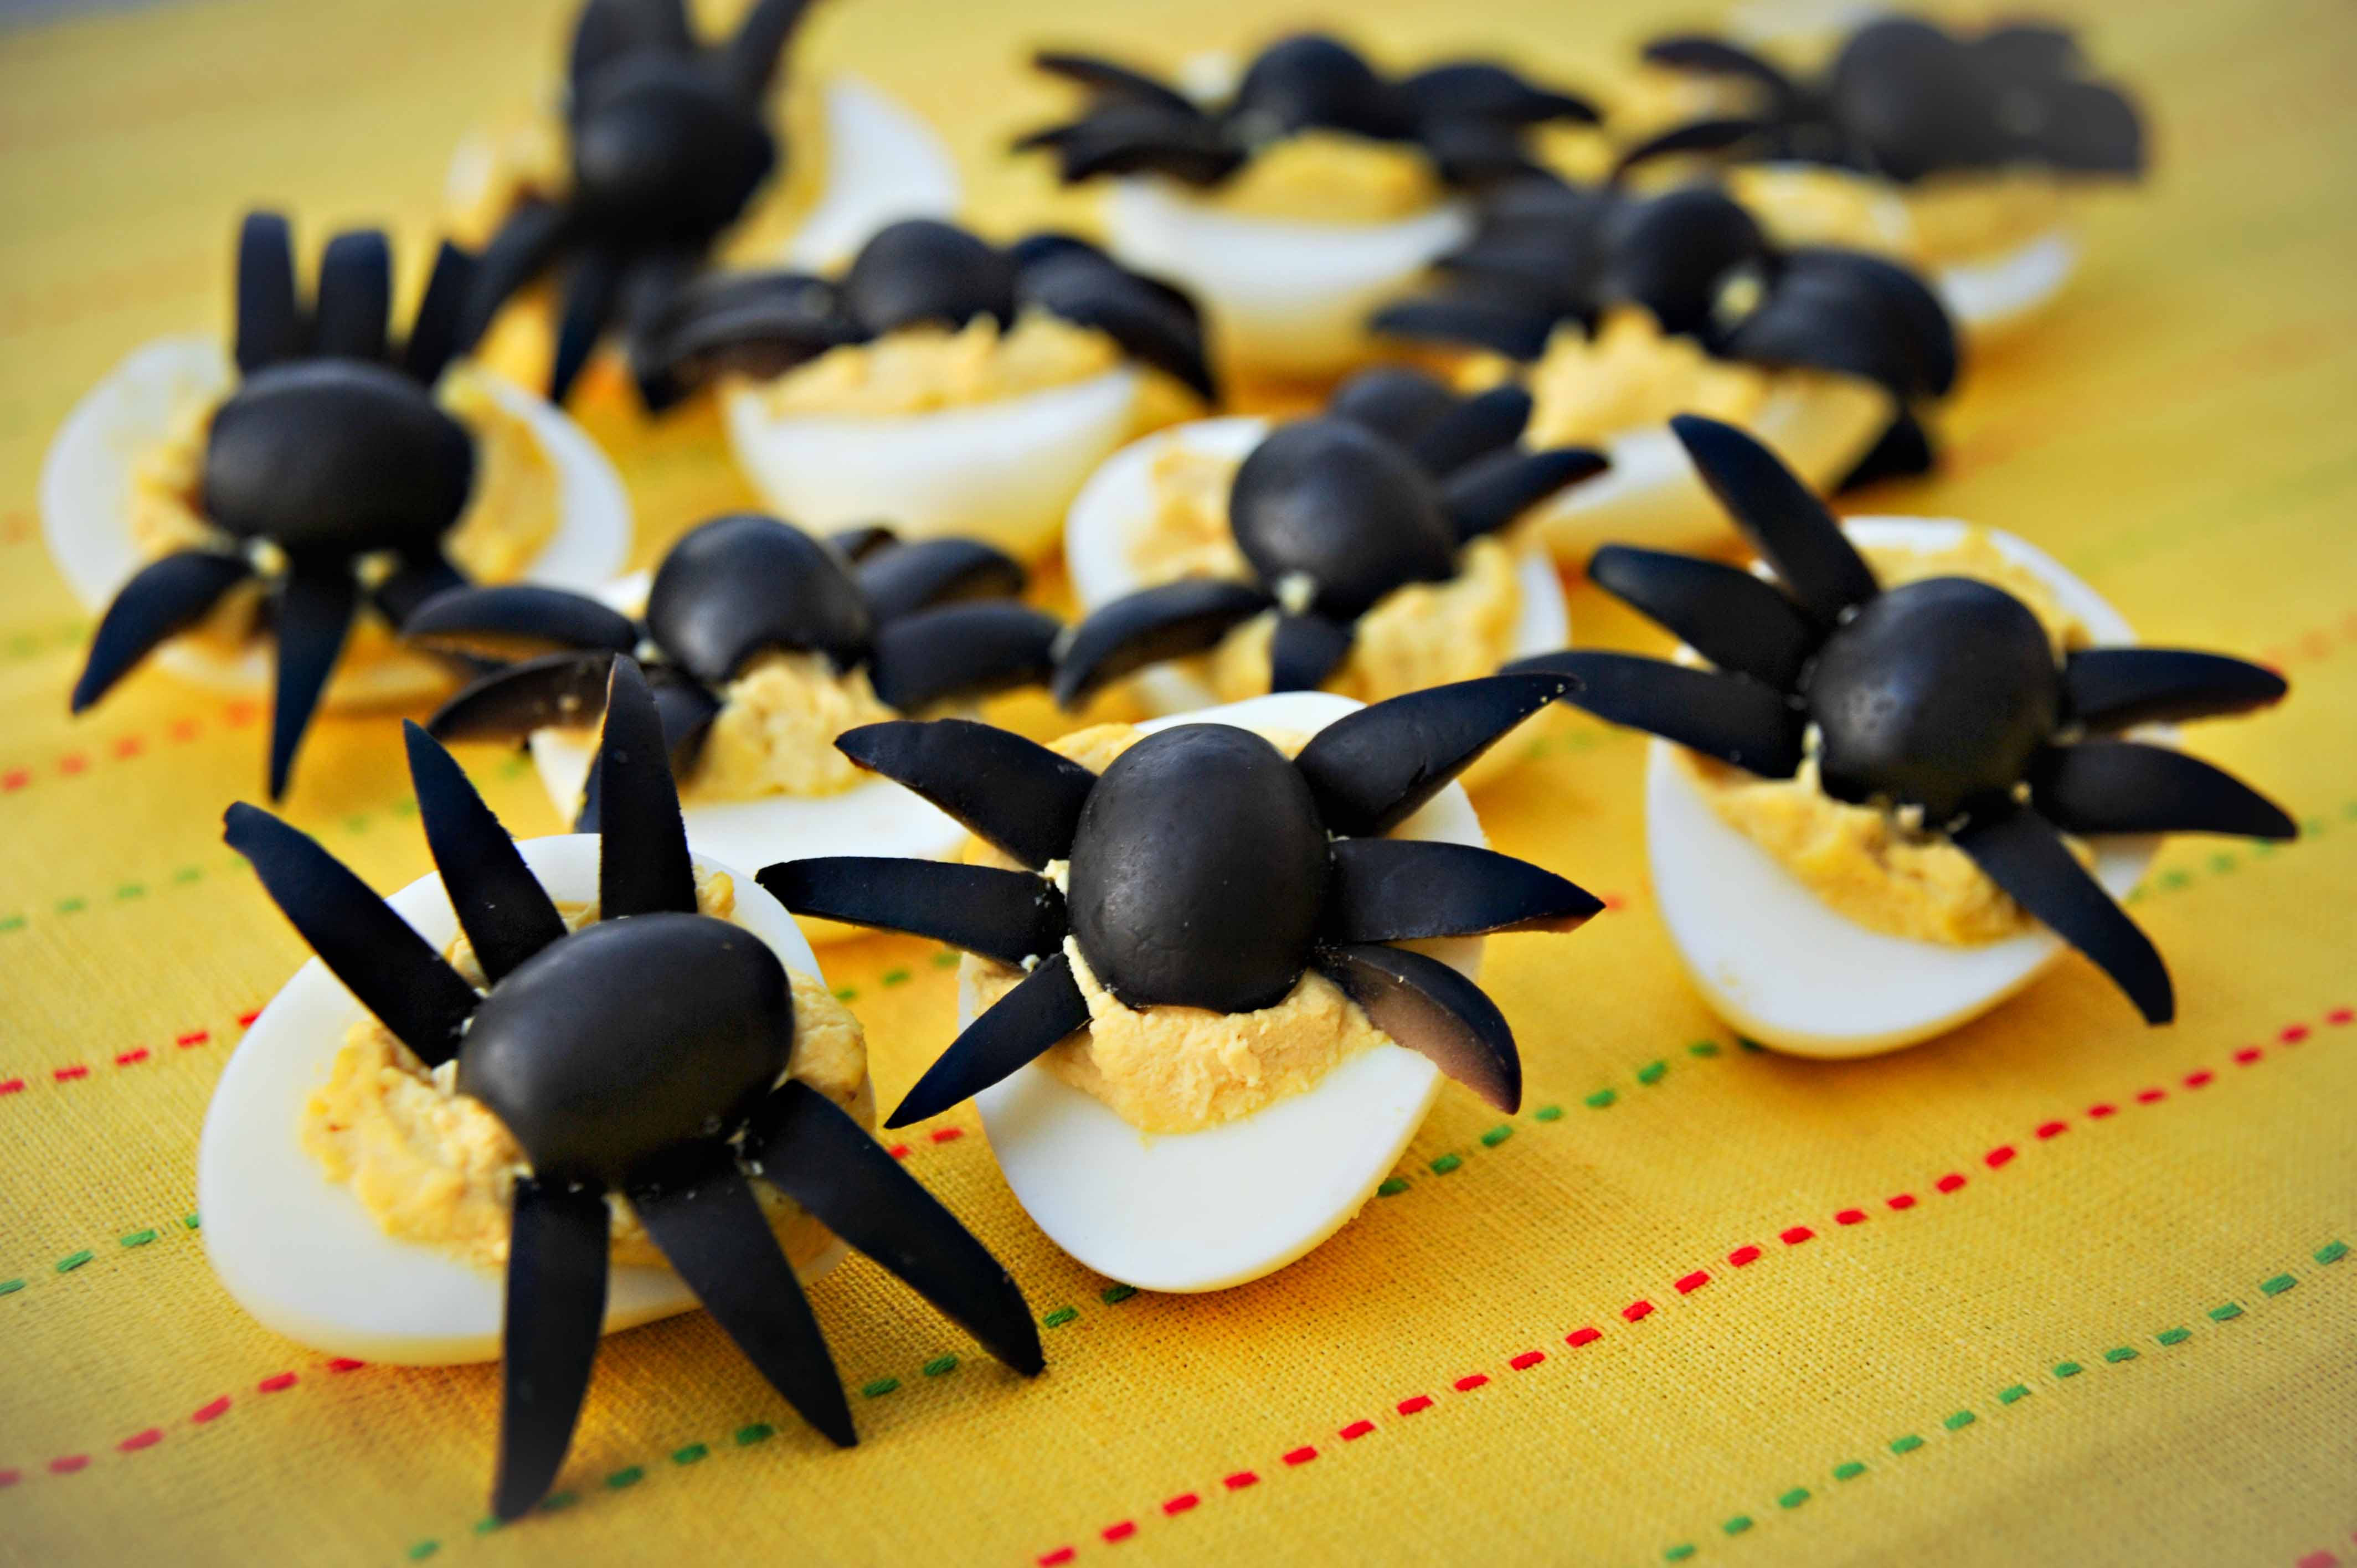 Deviled Eggs Spider Halloween
 Halloween Spider Deviled Eggs Recipe – A Family Halloween